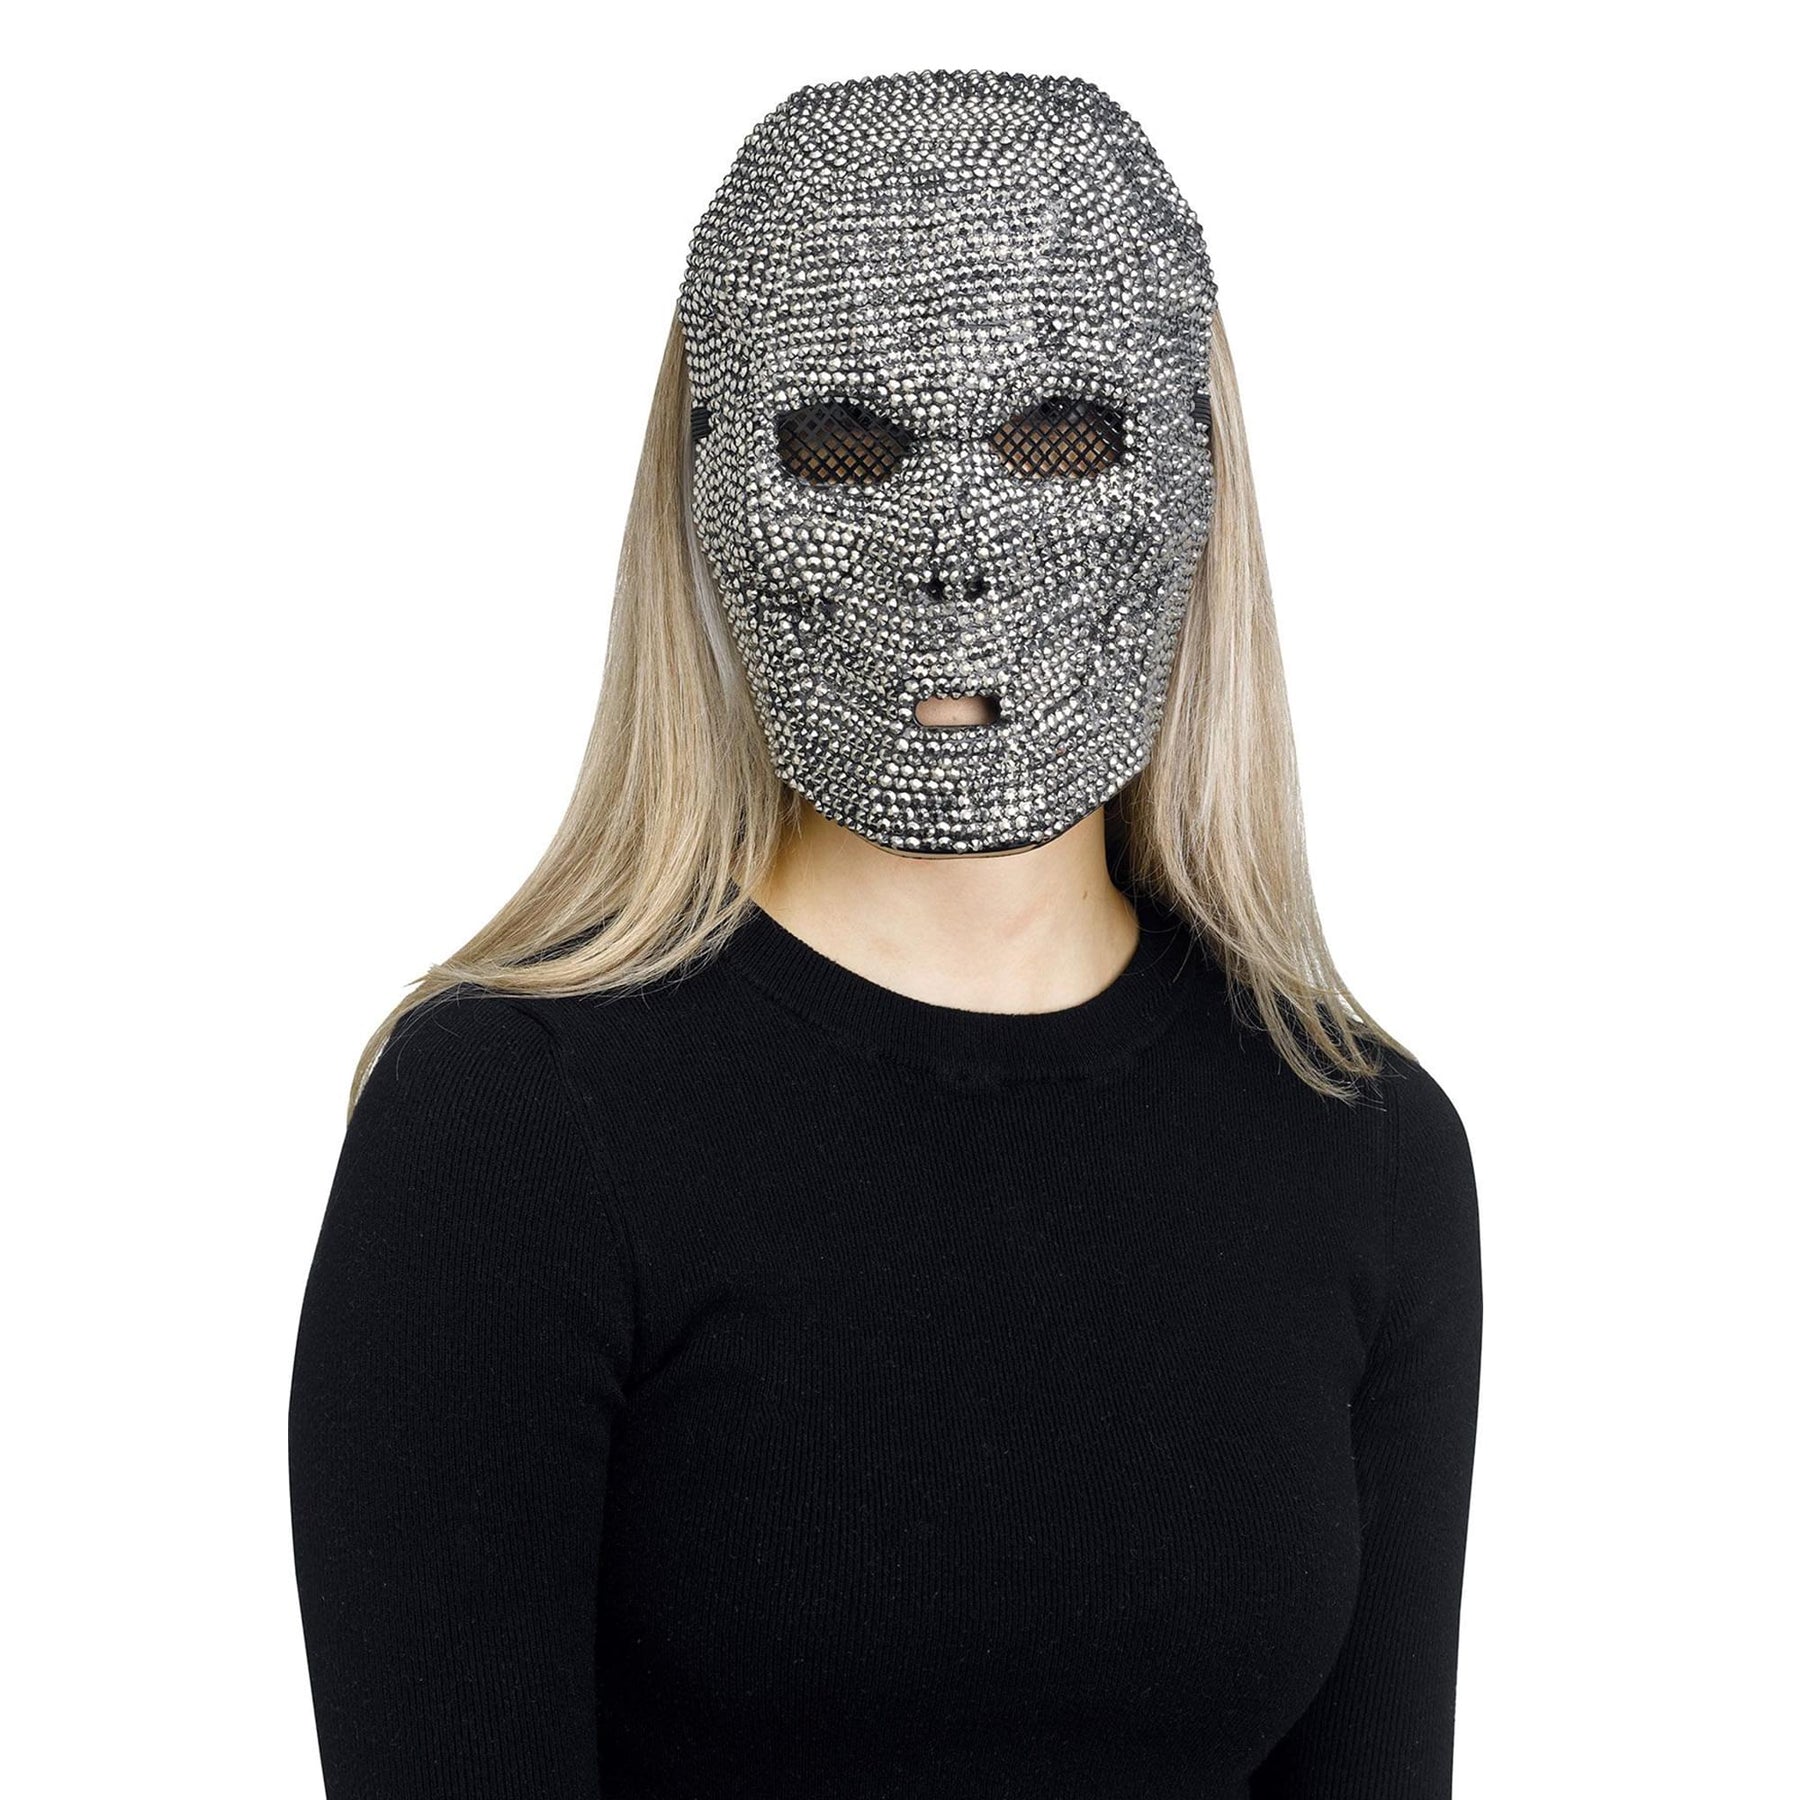 Gunpowder Bling Skull Adult Costume Mask